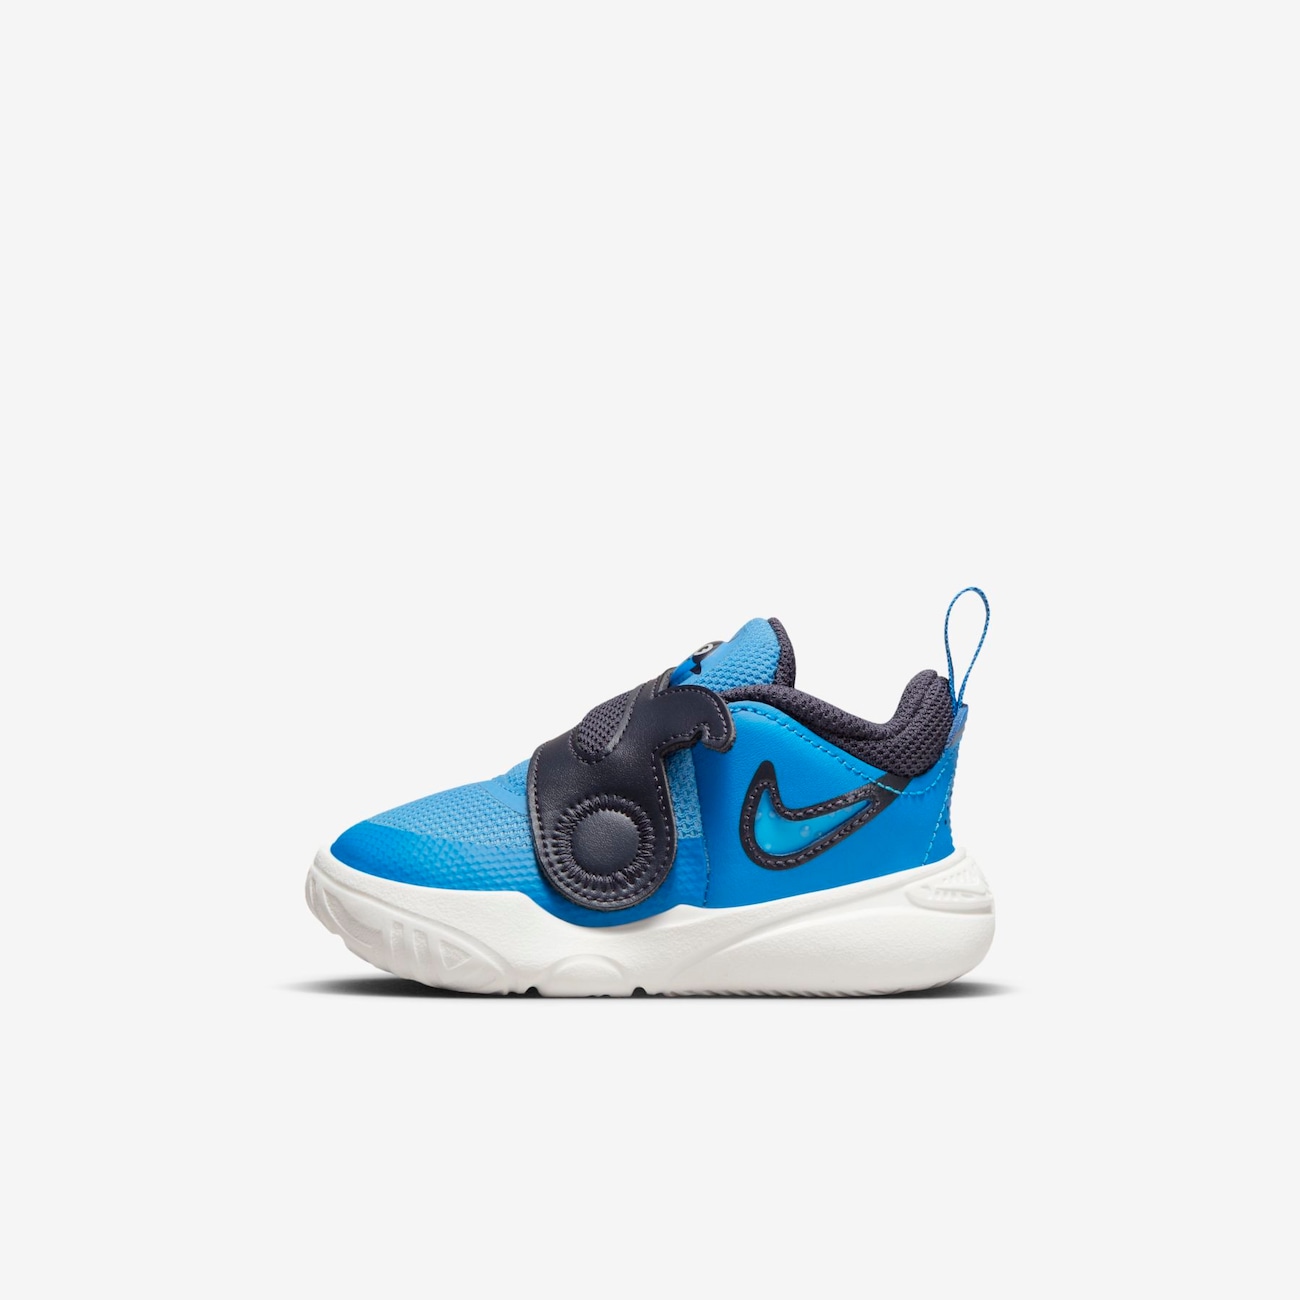 Nike Team Hustle D 11 Lil schoenen voor baby's/peuters - Blauw